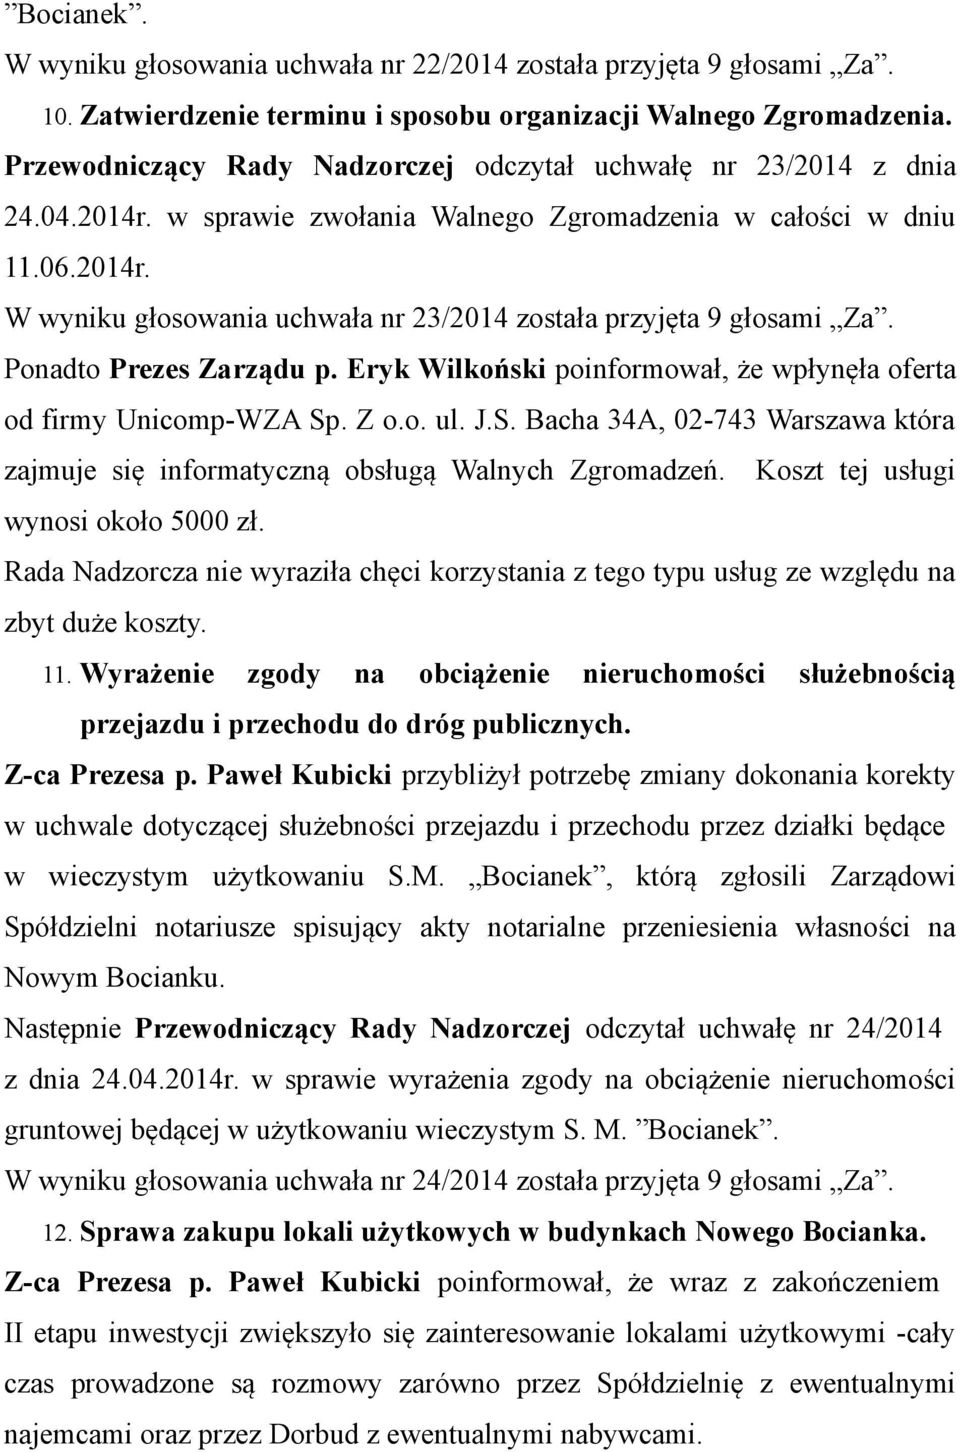 Ponadto Prezes Zarządu p. Eryk Wilkoński poinformował, że wpłynęła oferta od firmy Unicomp-WZA Sp. Z o.o. ul. J.S. Bacha 34A, 02-743 Warszawa która zajmuje się informatyczną obsługą Walnych Zgromadzeń.